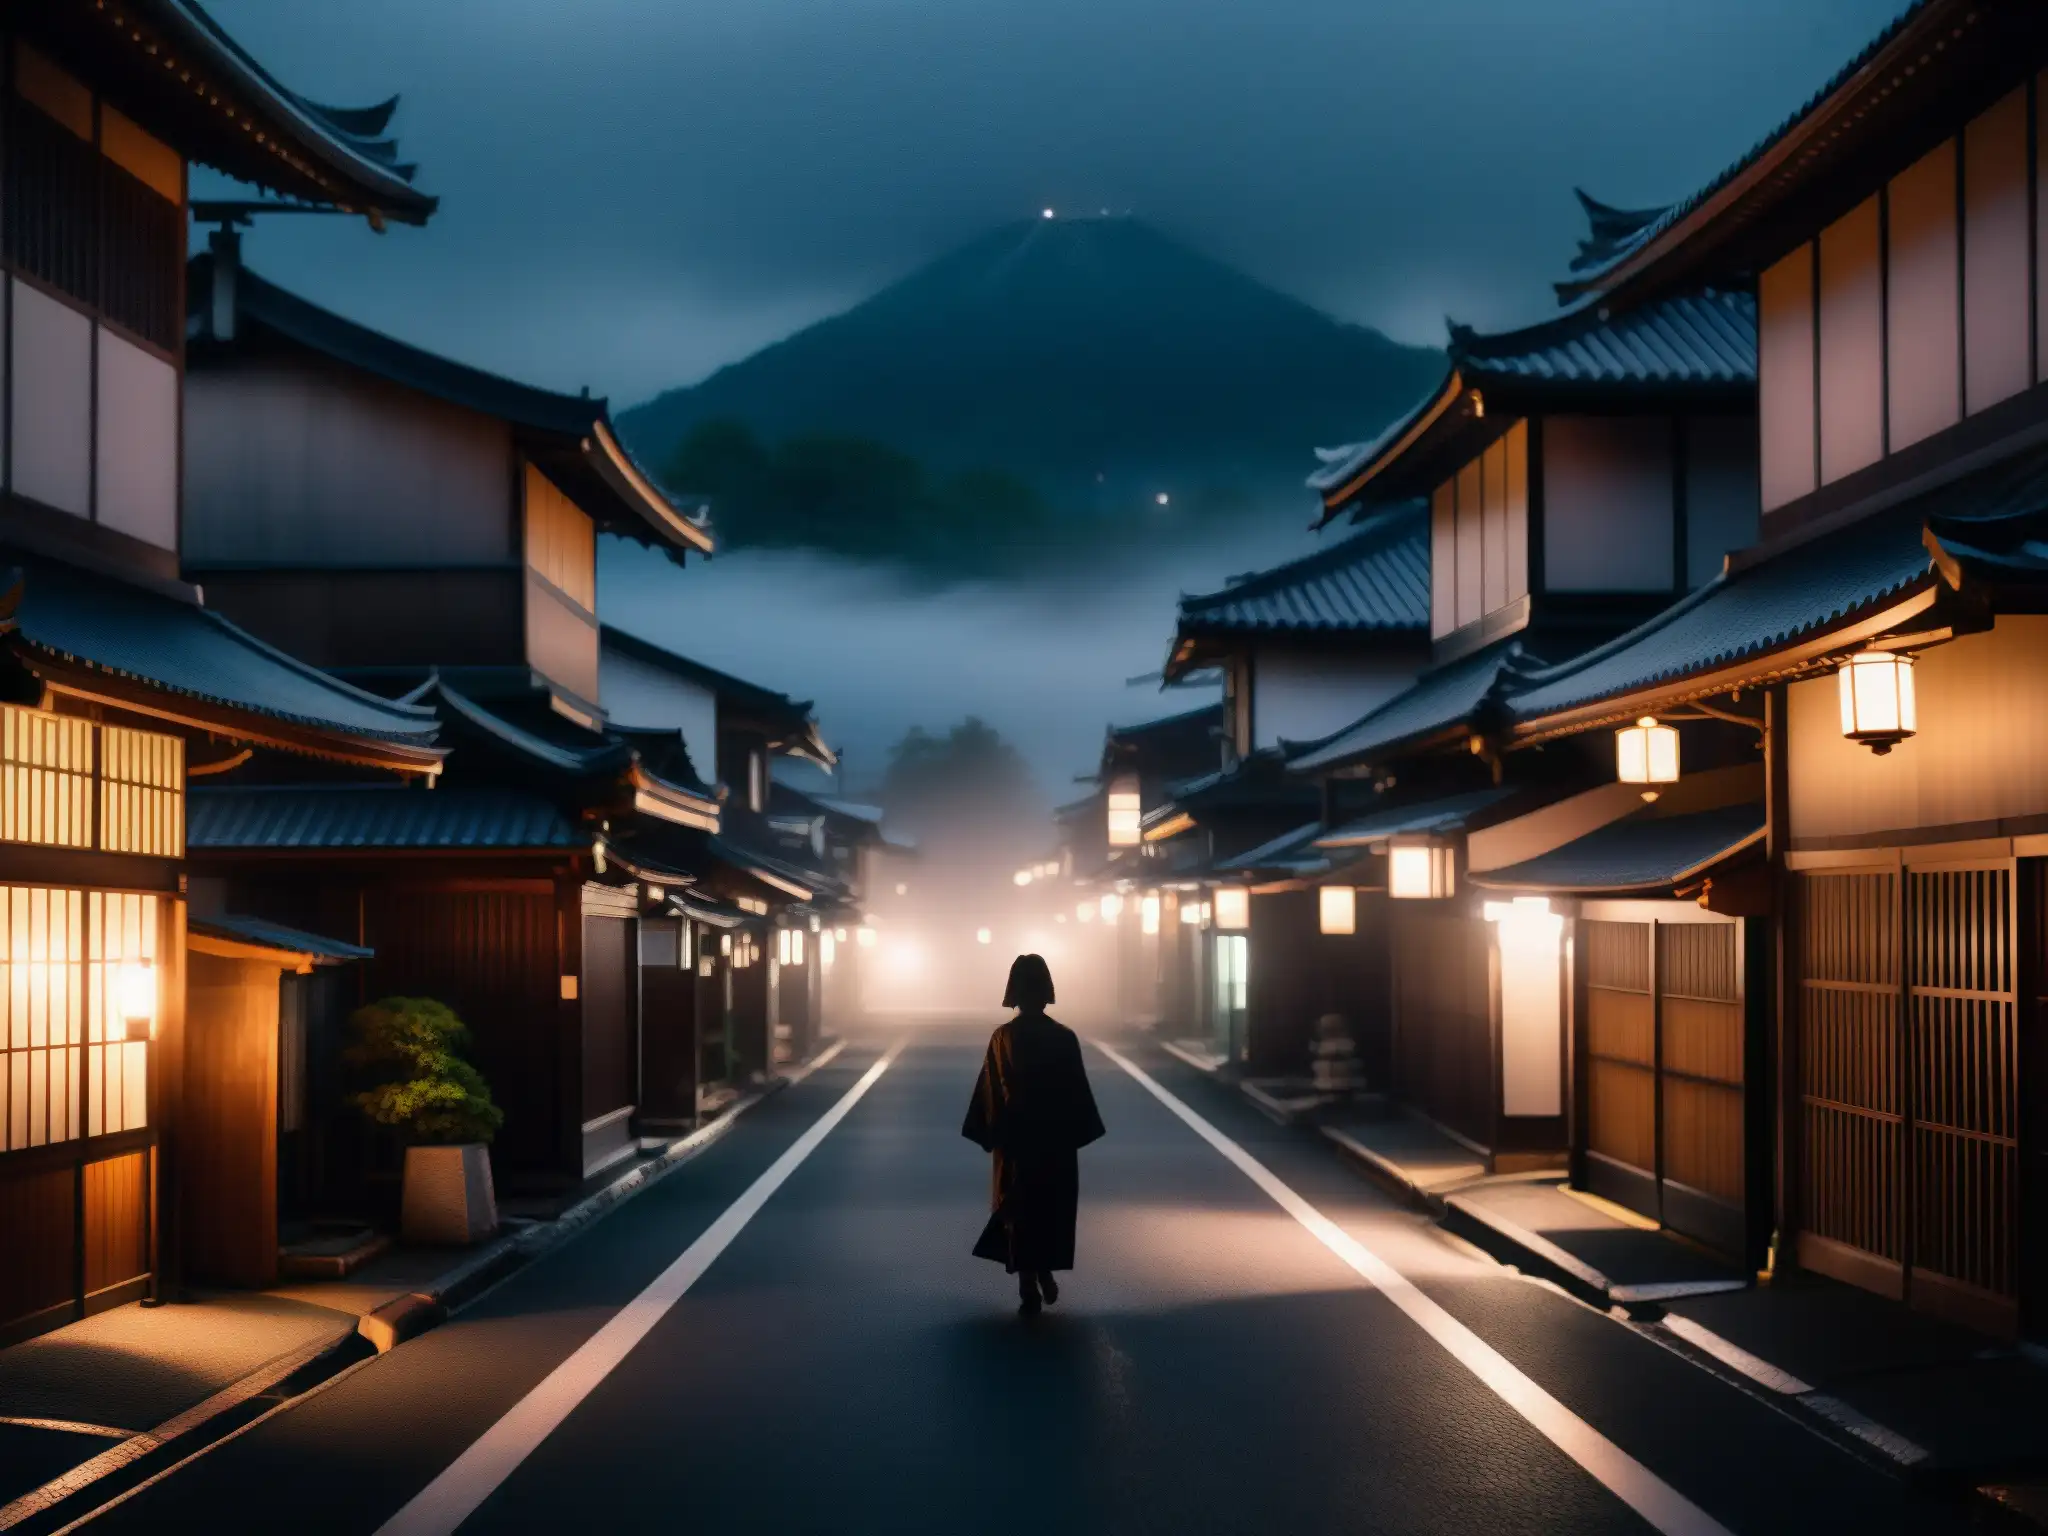 Un misterioso callejón japonés de noche con niebla, evocando la atmósfera inquietante del Nopperabō en la narrativa contemporánea